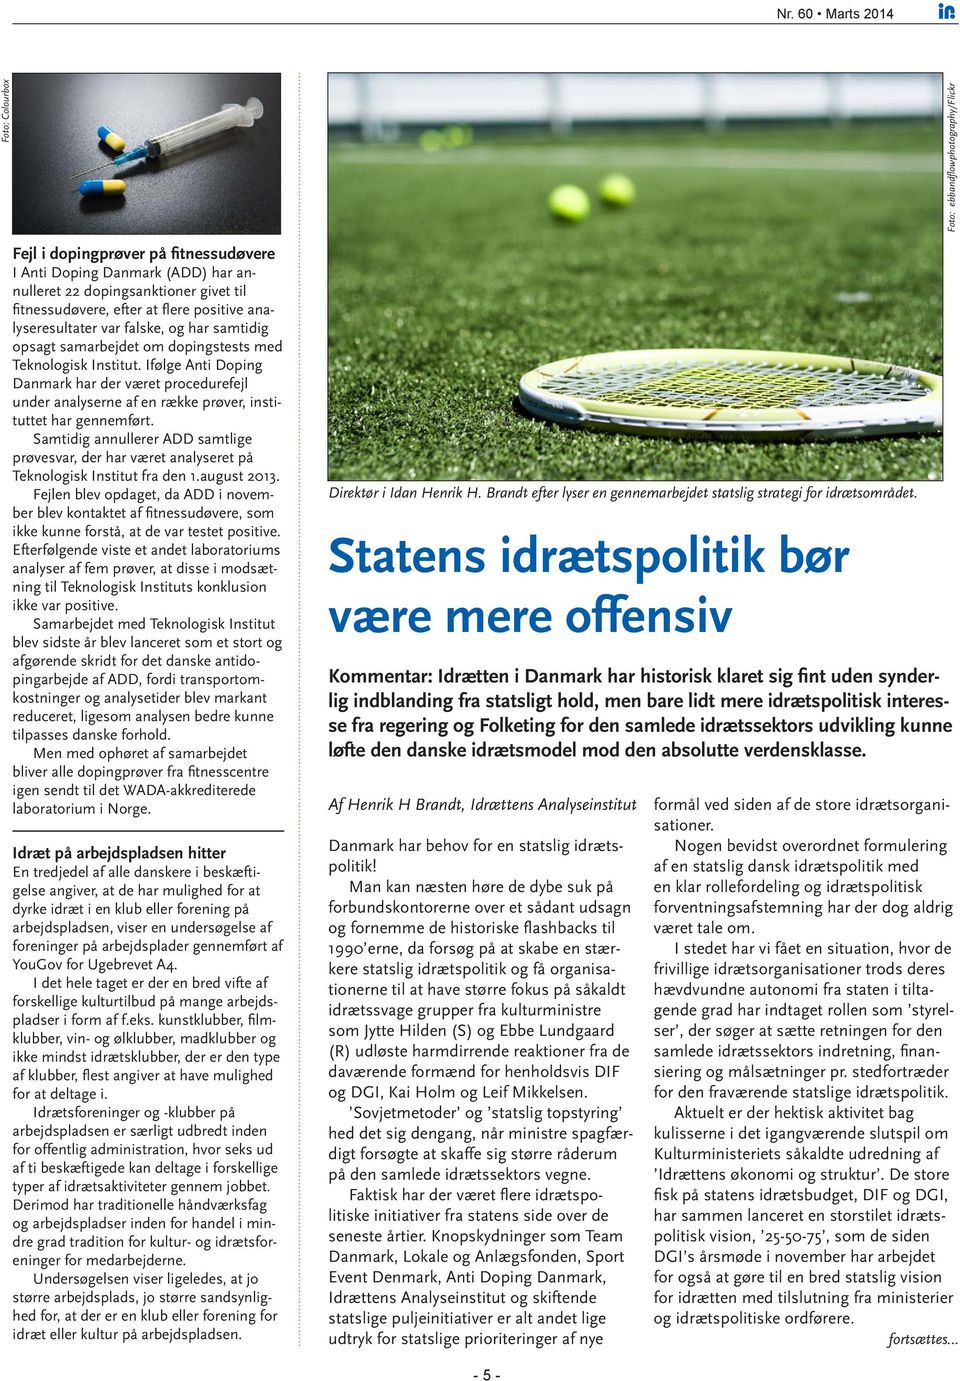 Ifølge Anti Doping Danmark har der været procedurefejl under analyserne af en række prøver, instituttet har gennemført.